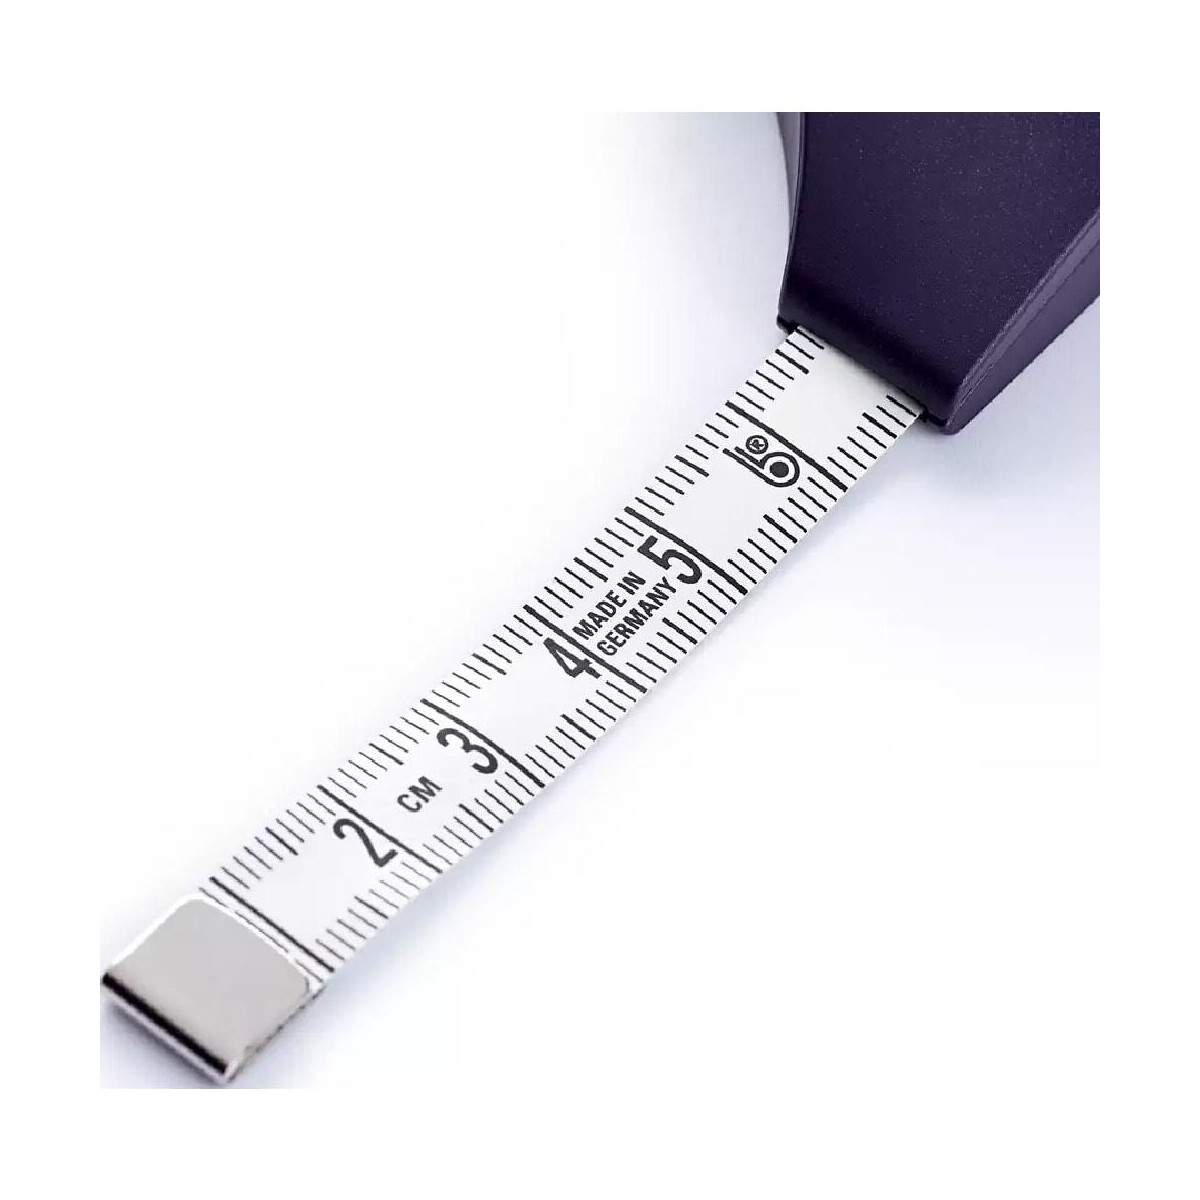 Prym Spring tape measure prym.ergonomics, 150cm